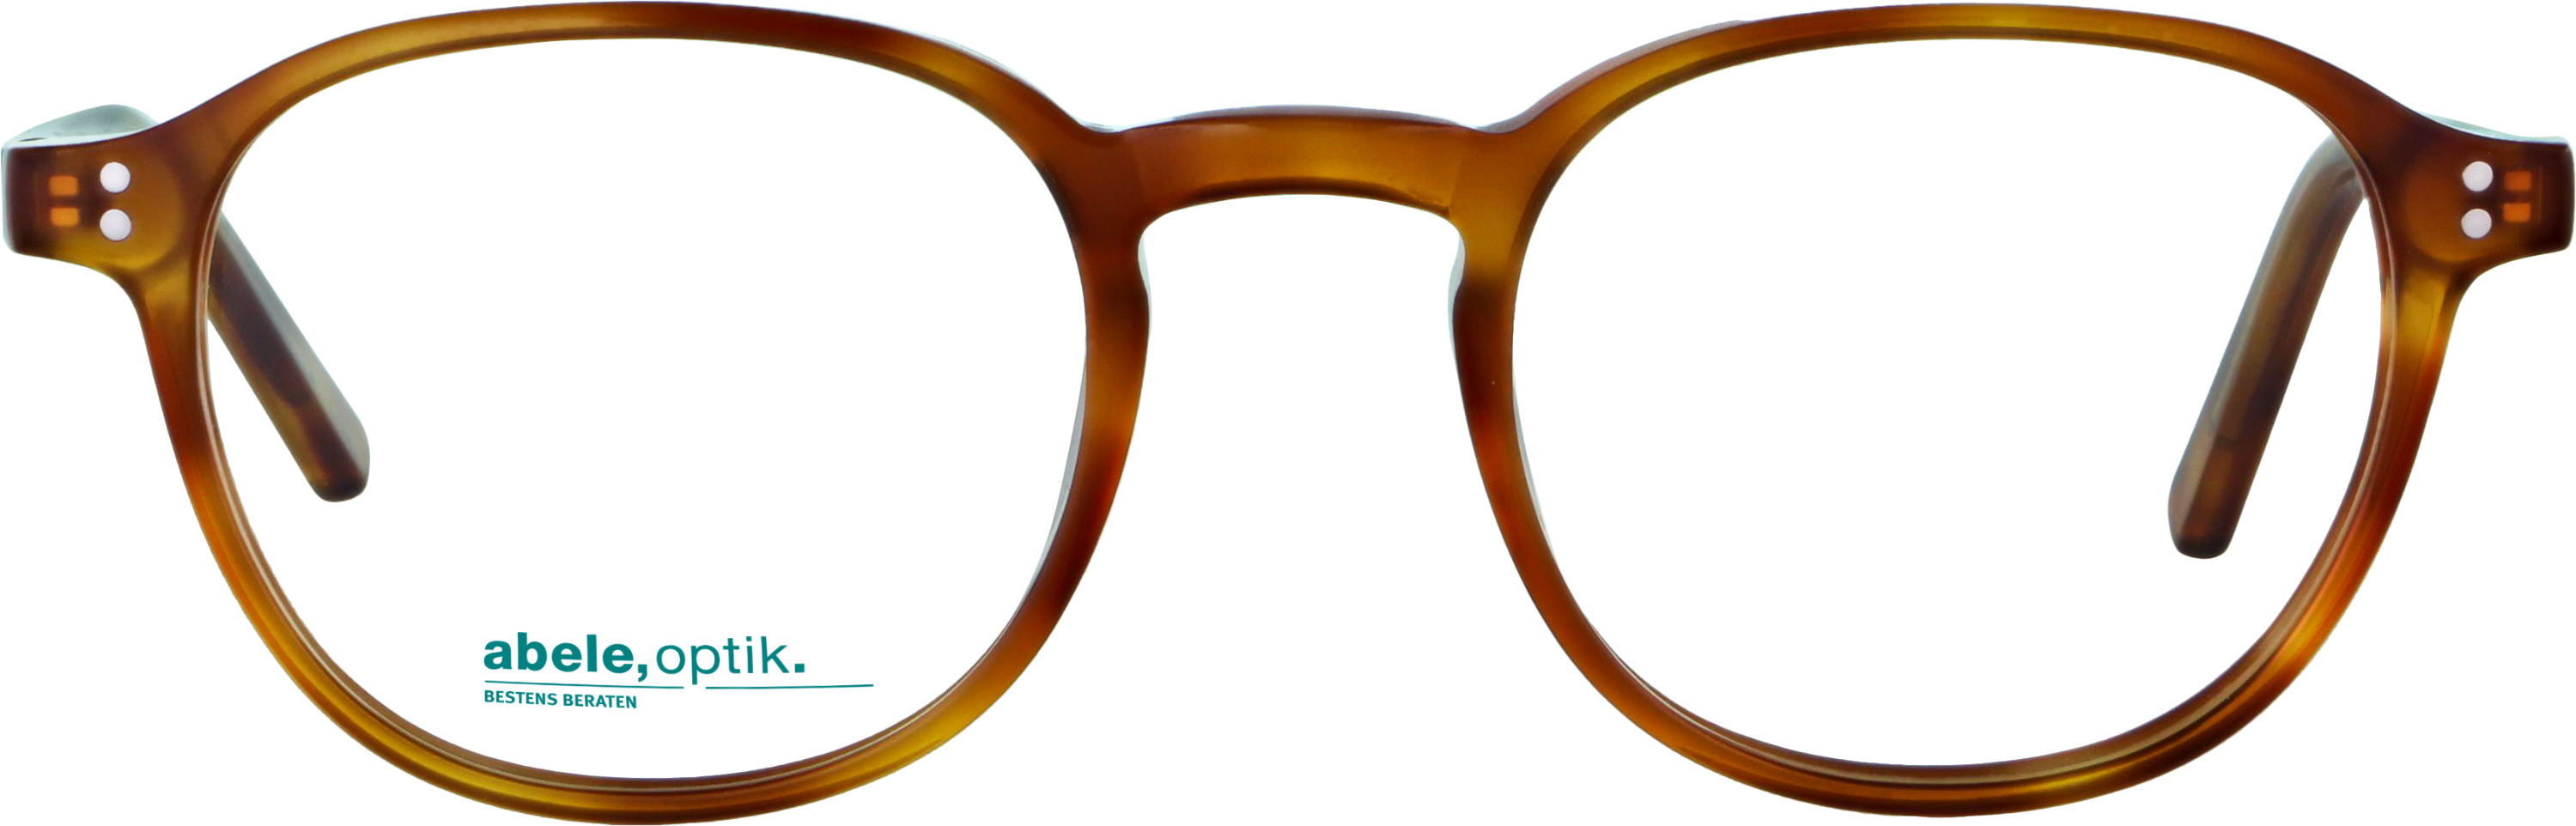 Das Bild zeigt die Korrektionsbrille 142001 von der Marke Abele Optik in havanna hell.